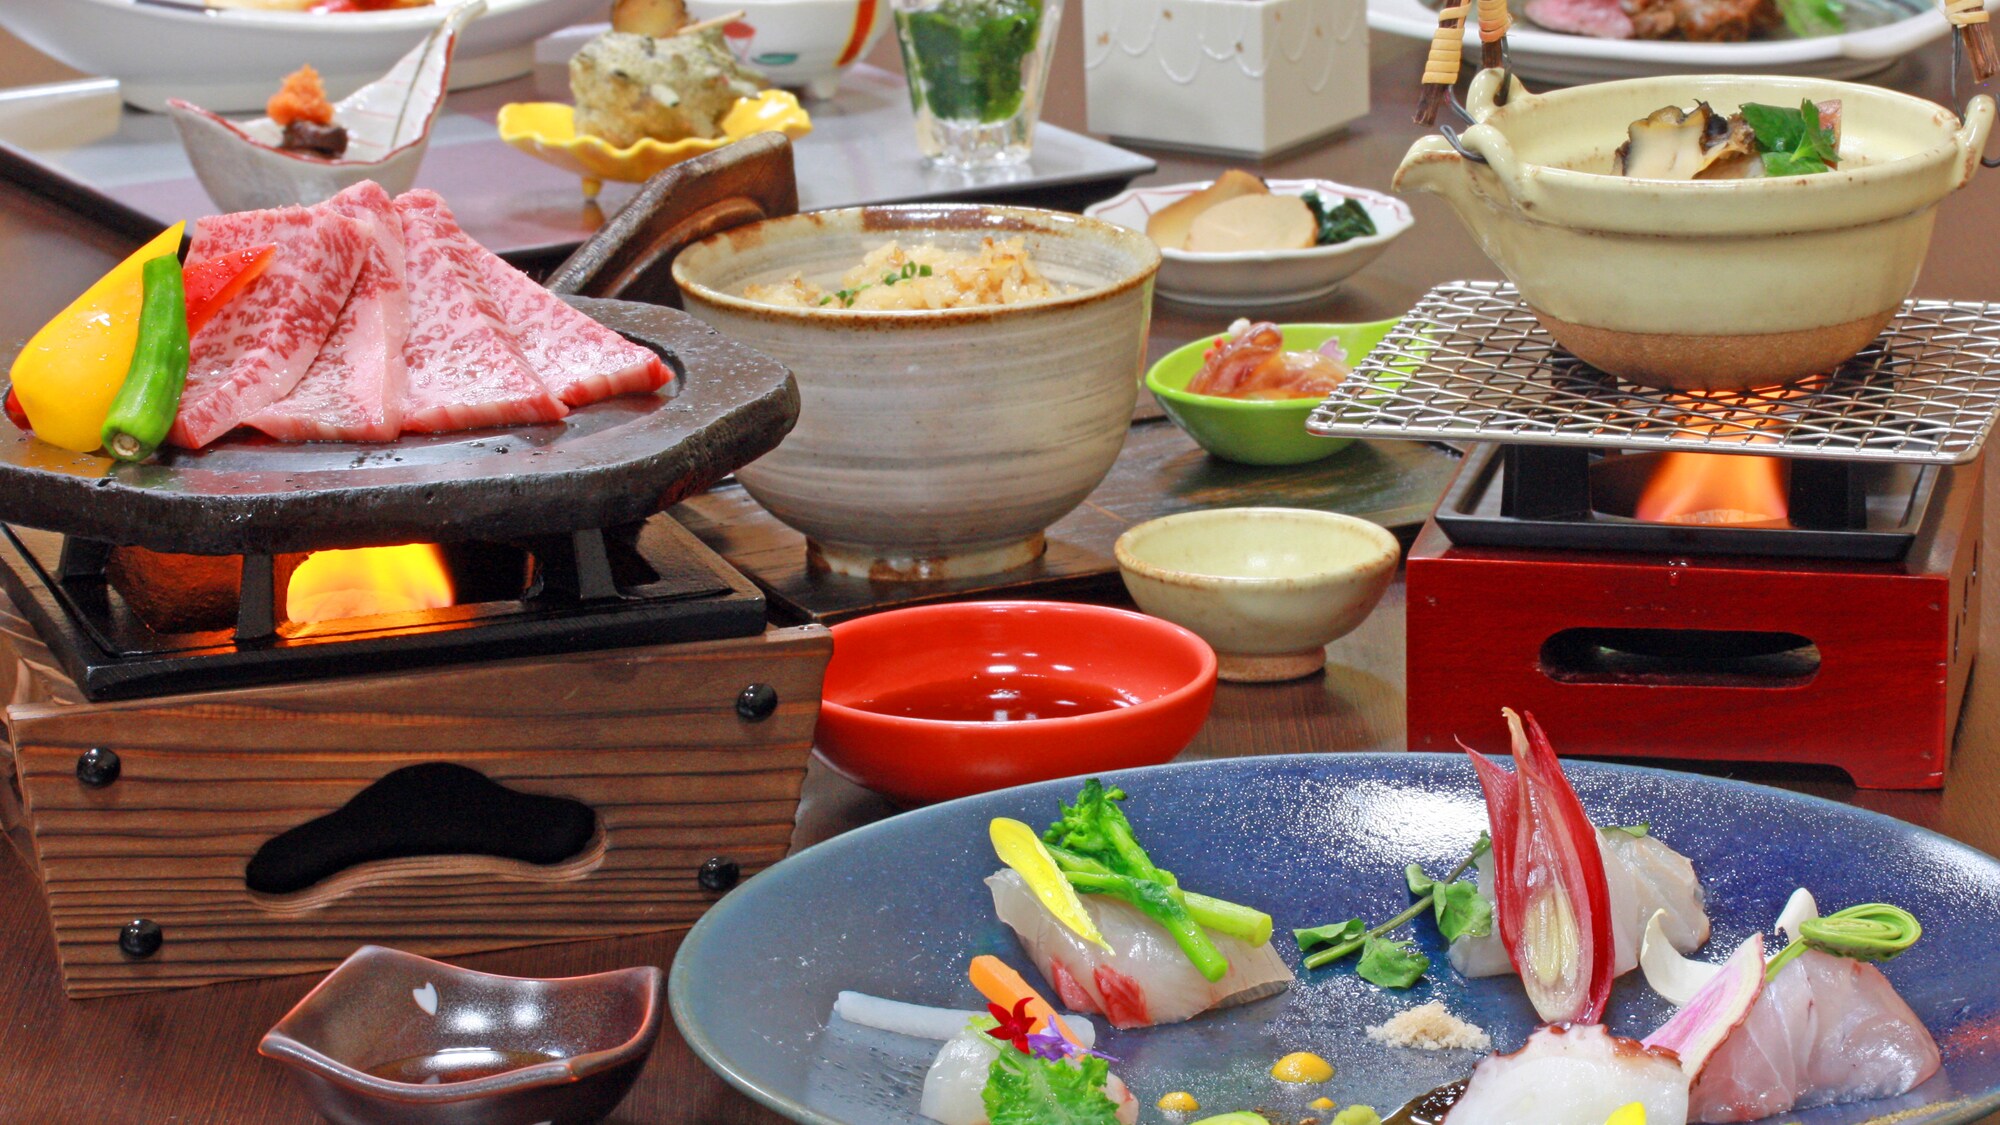 Nikmati steak daging sapi Akita Nishiki & cita rasa musiman dengan hidangan Jepang